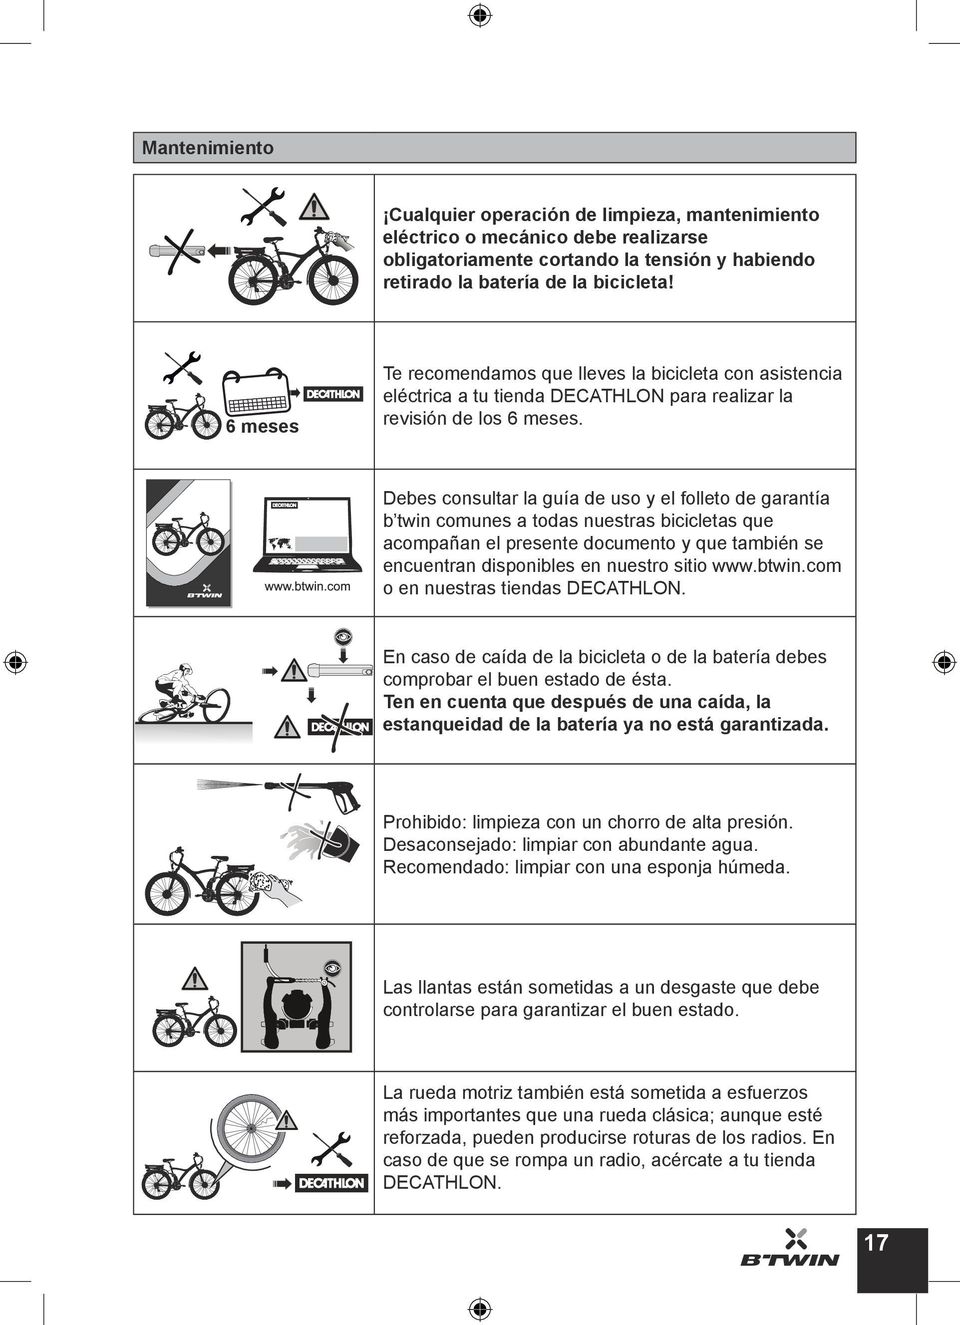 Debes consultar la guía de uso y el folleto de garantía b twin comunes a todas nuestras bicicletas que acompañan el presente documento y que también se encuentran disponibles en nuestro sitio www.